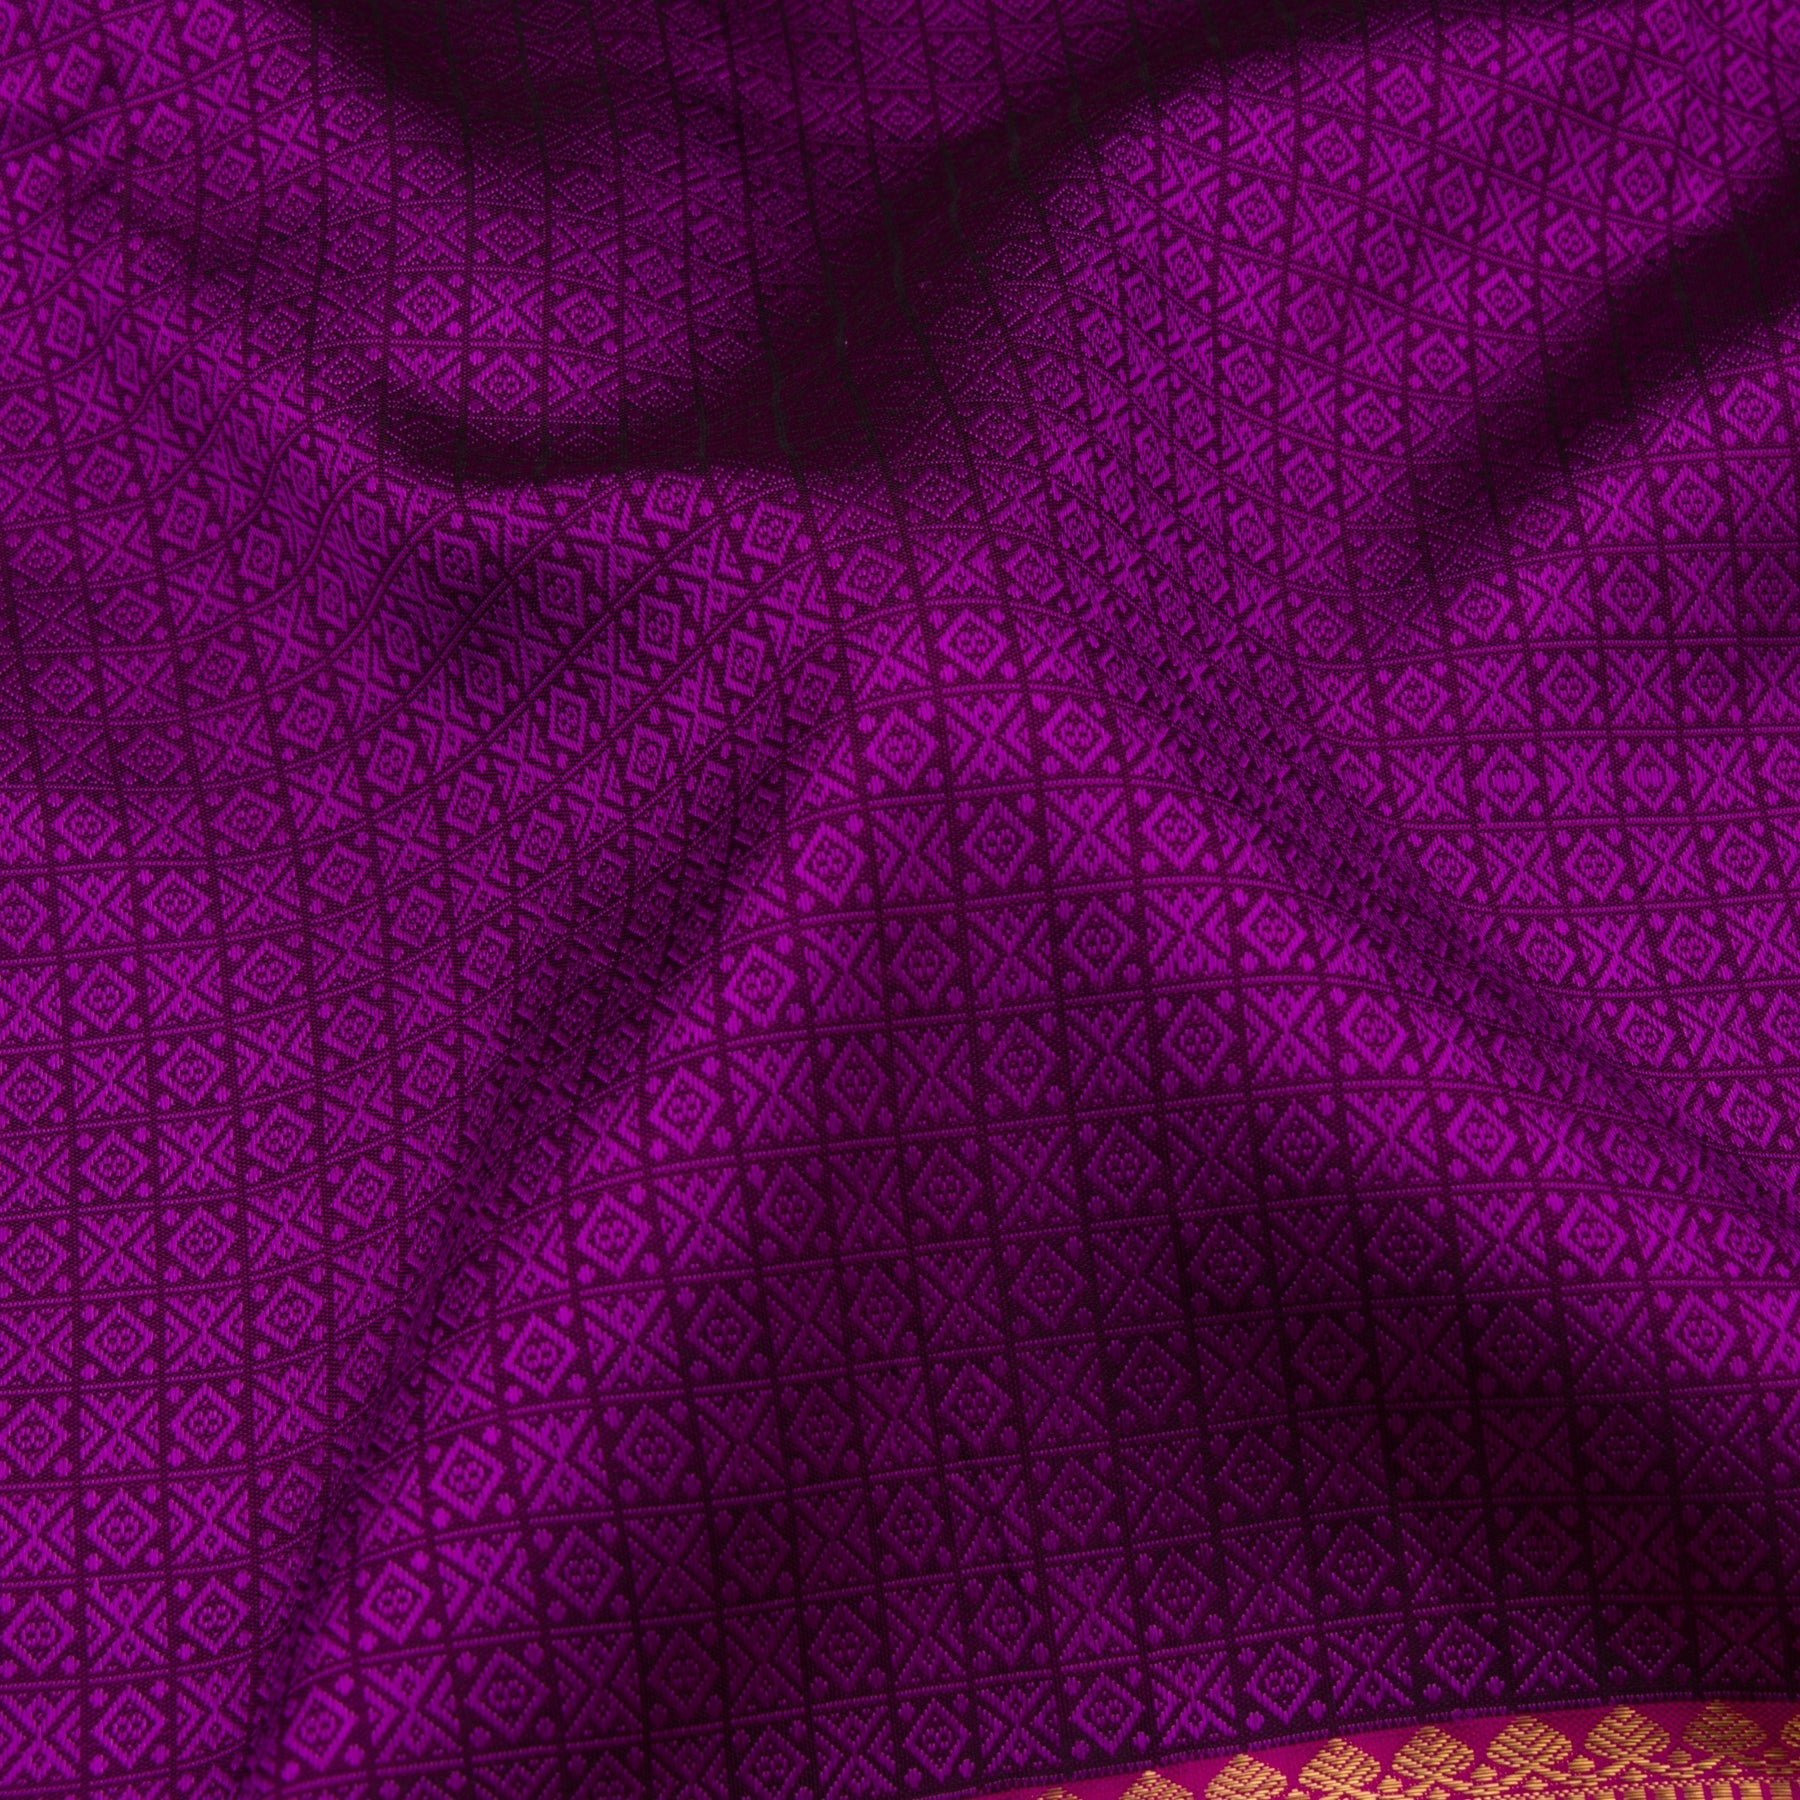 Kanakavalli Kanjivaram Silk Sari 21-100-HS001-04475 - Fabric View